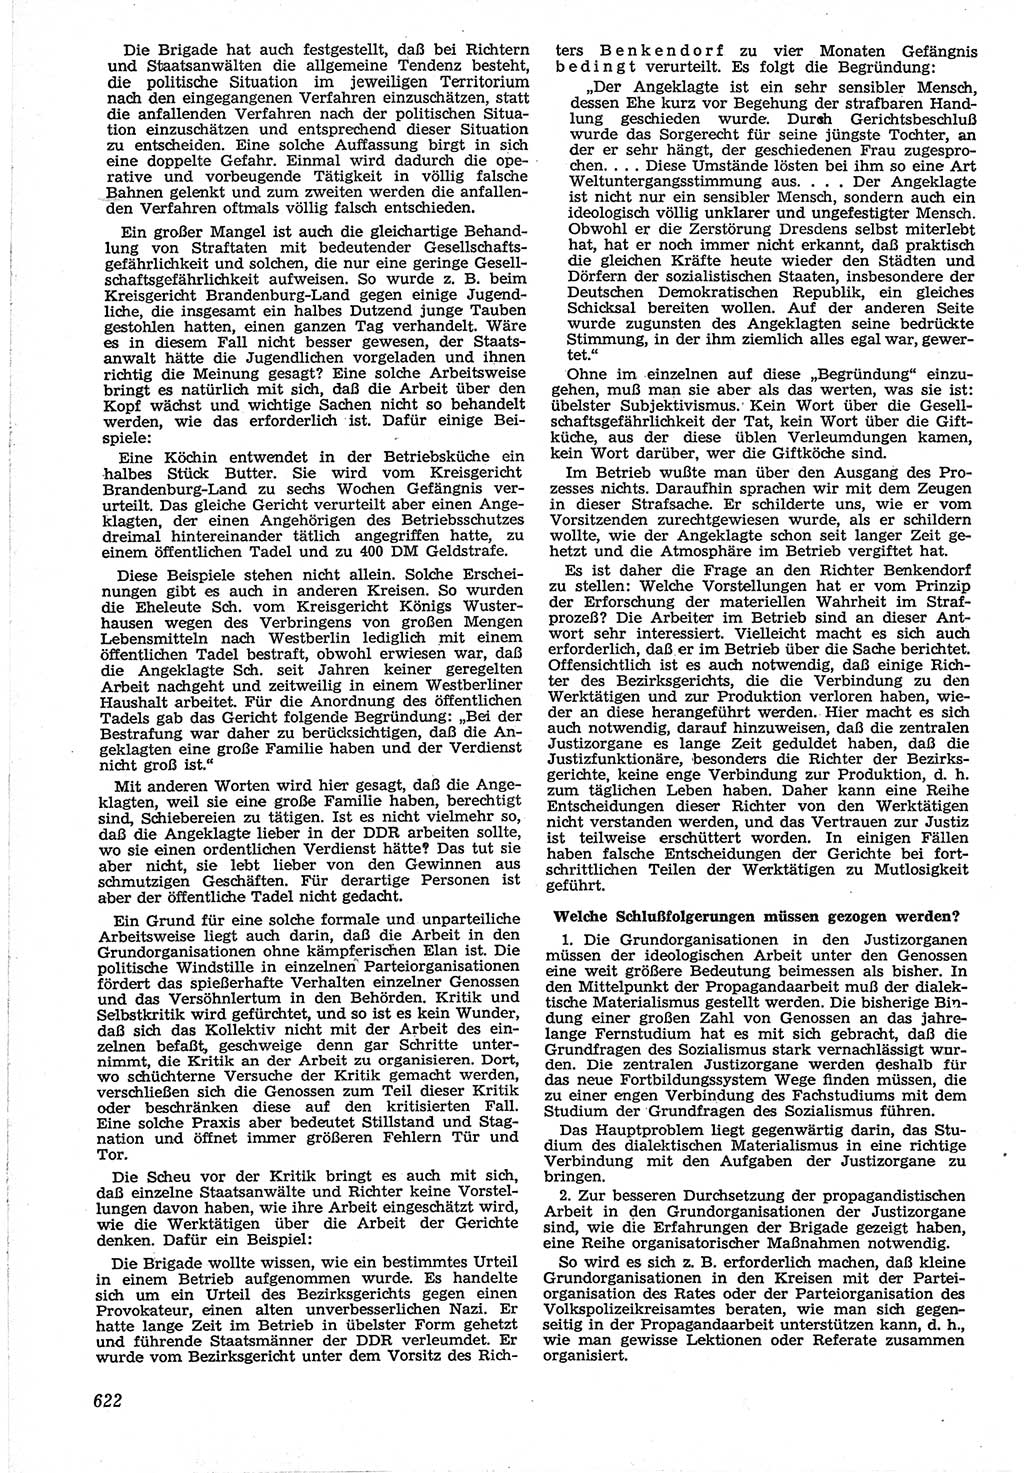 Neue Justiz (NJ), Zeitschrift für Recht und Rechtswissenschaft [Deutsche Demokratische Republik (DDR)], 12. Jahrgang 1958, Seite 622 (NJ DDR 1958, S. 622)